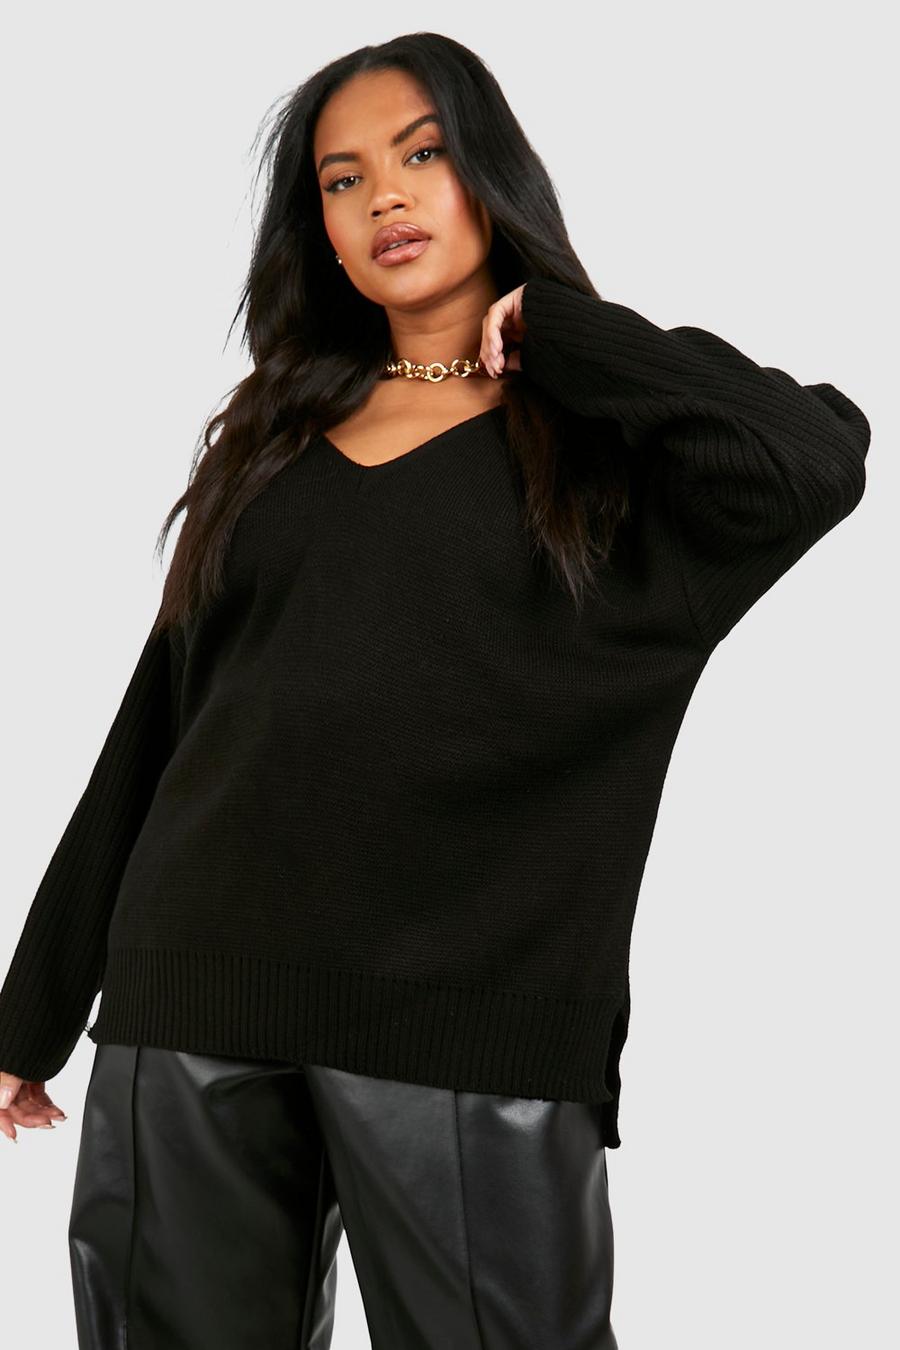 שחור סוודר עם צווארון וי מלפנים ומאחור מידות גדולות